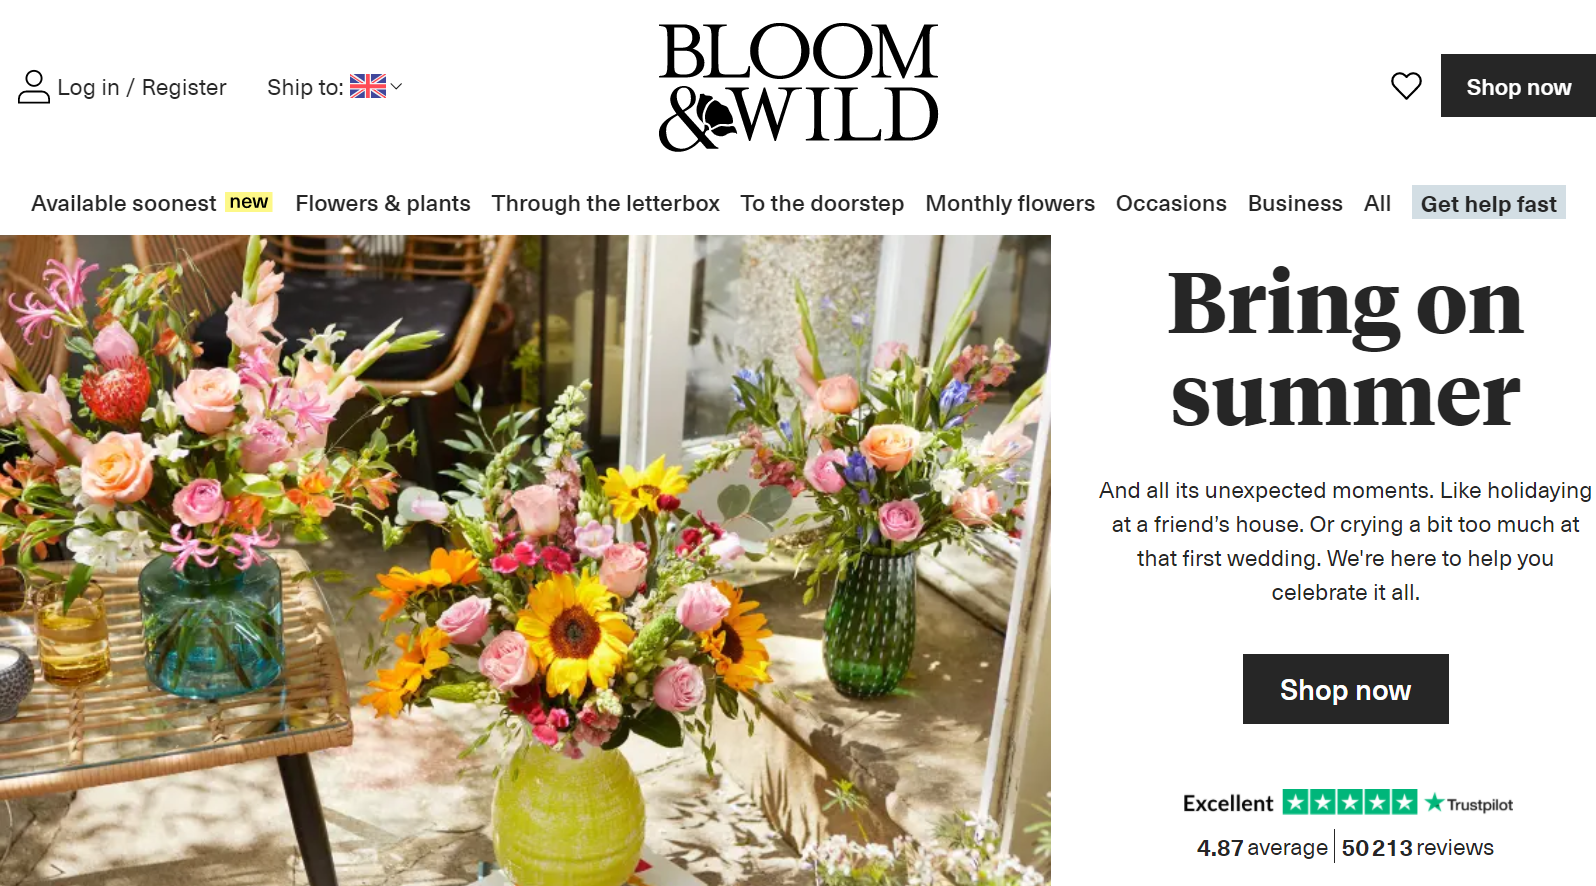 英国鲜花和礼品电商 Bloom & Wild 收购法国同行 Bergamotte